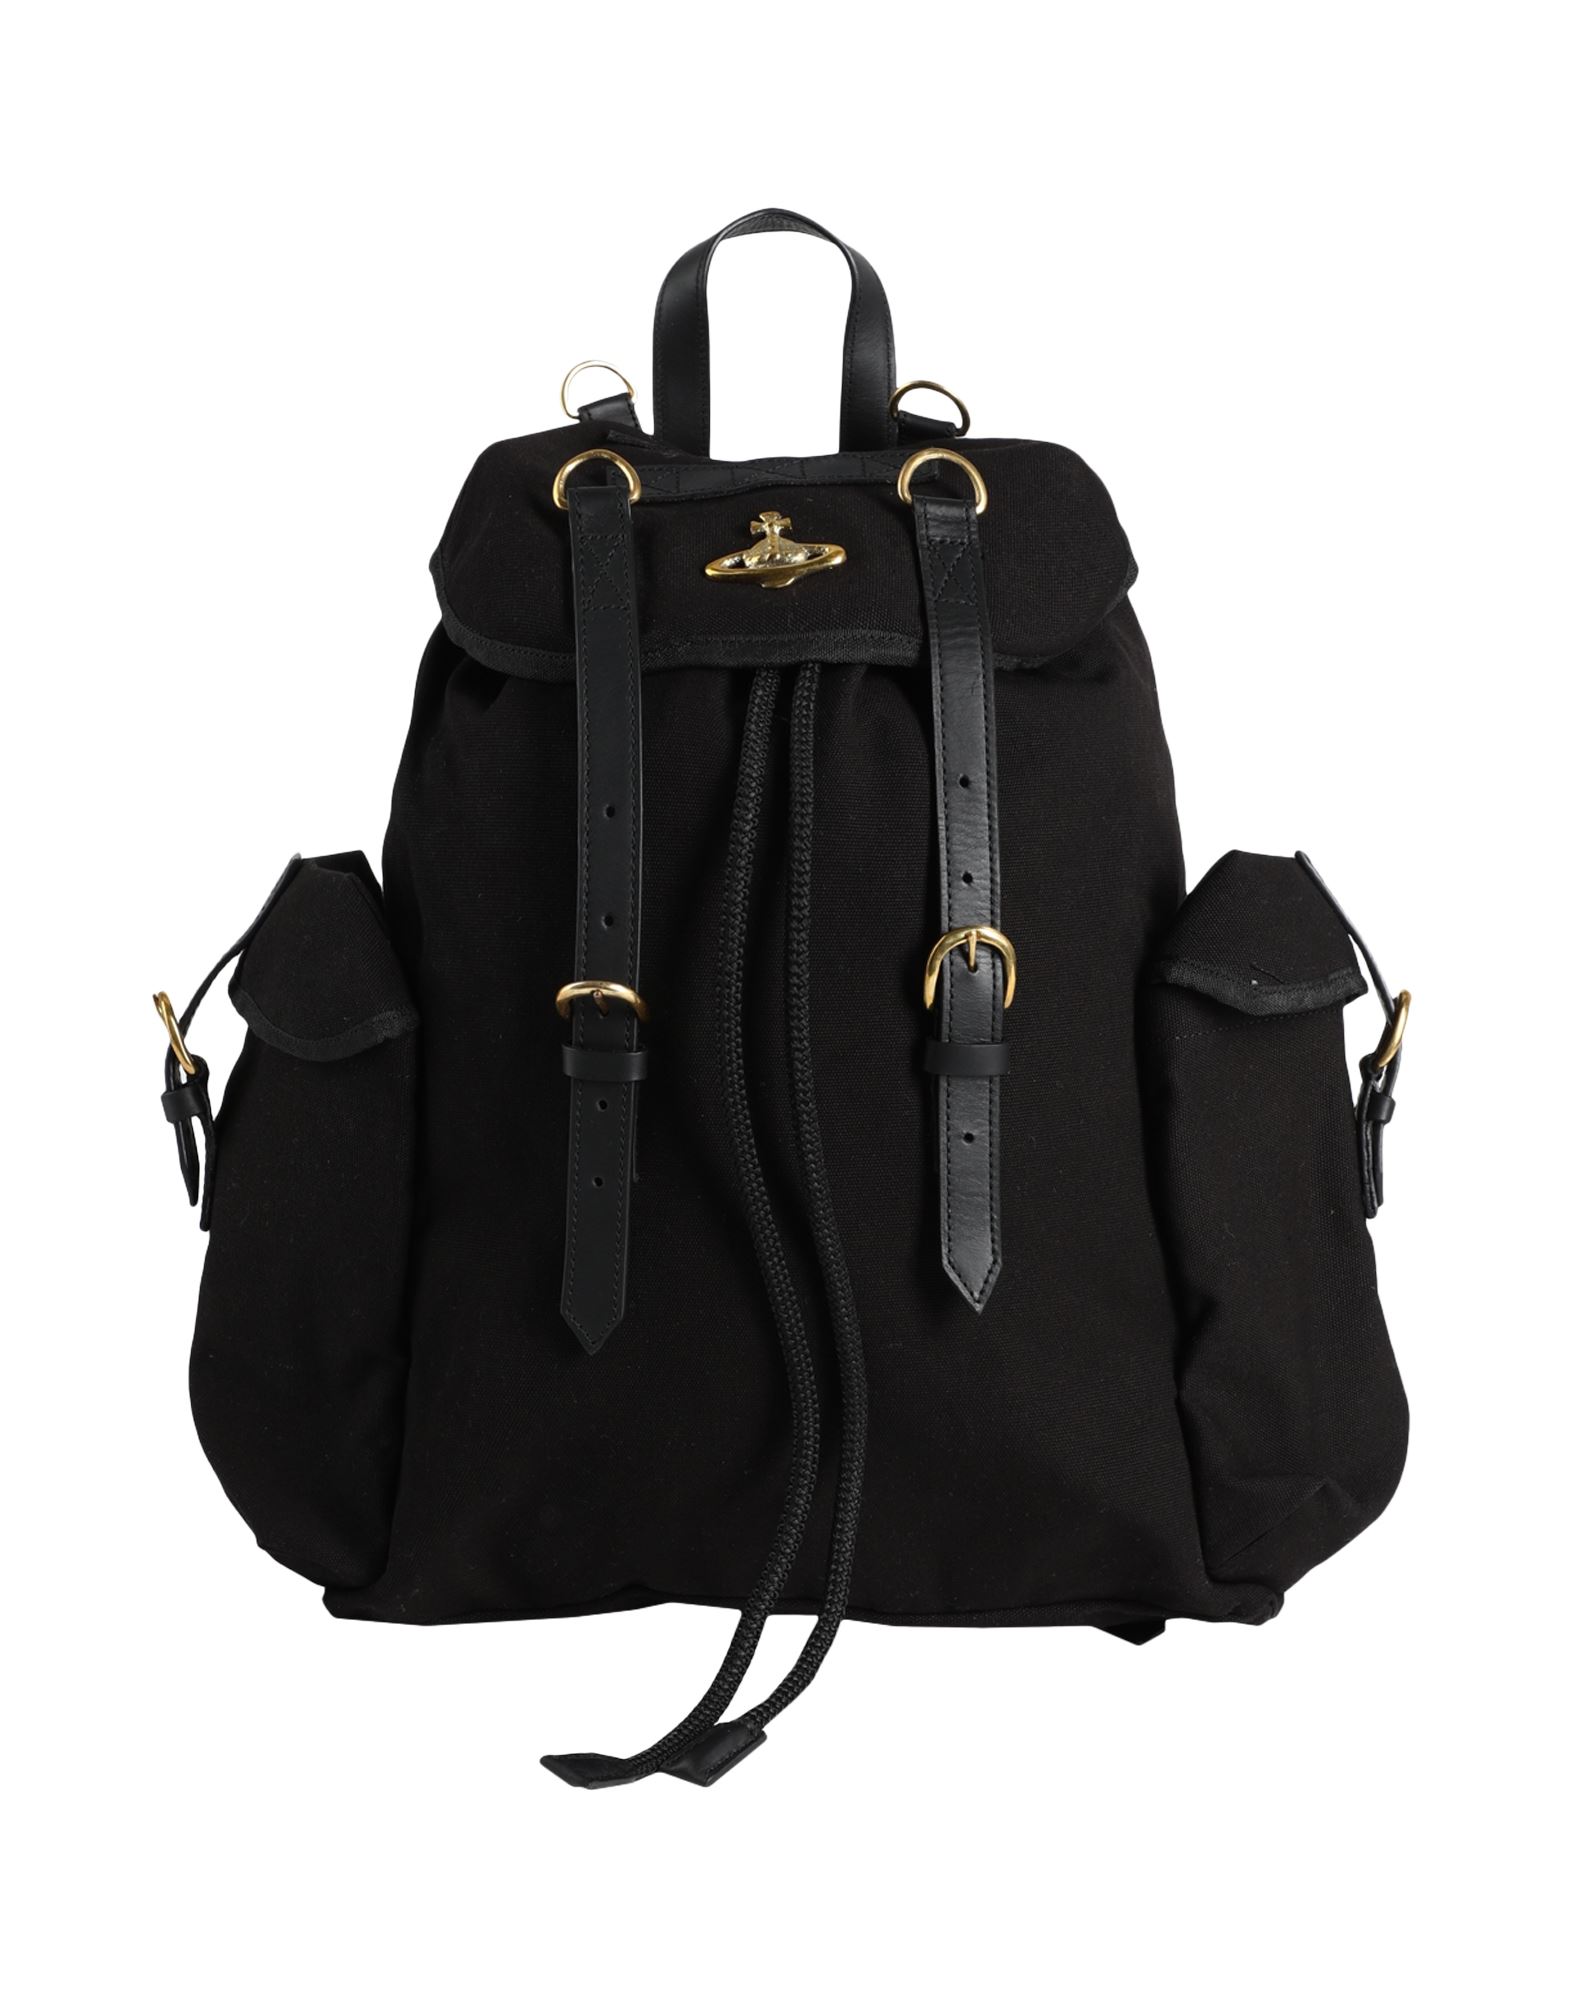 Vivienne Westwood Backpacks In Black | ModeSens